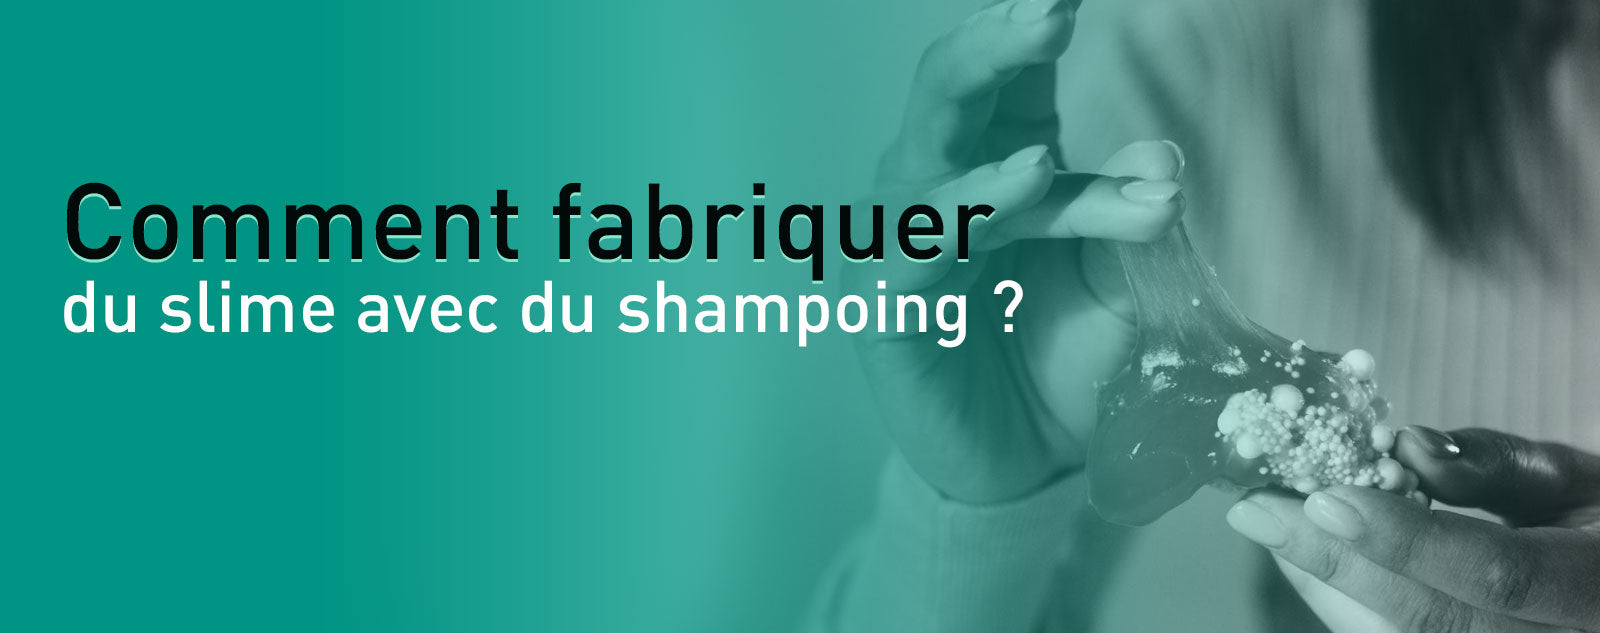 Comment fabriquer du slime avec du shampoing ? - Stress Zéro